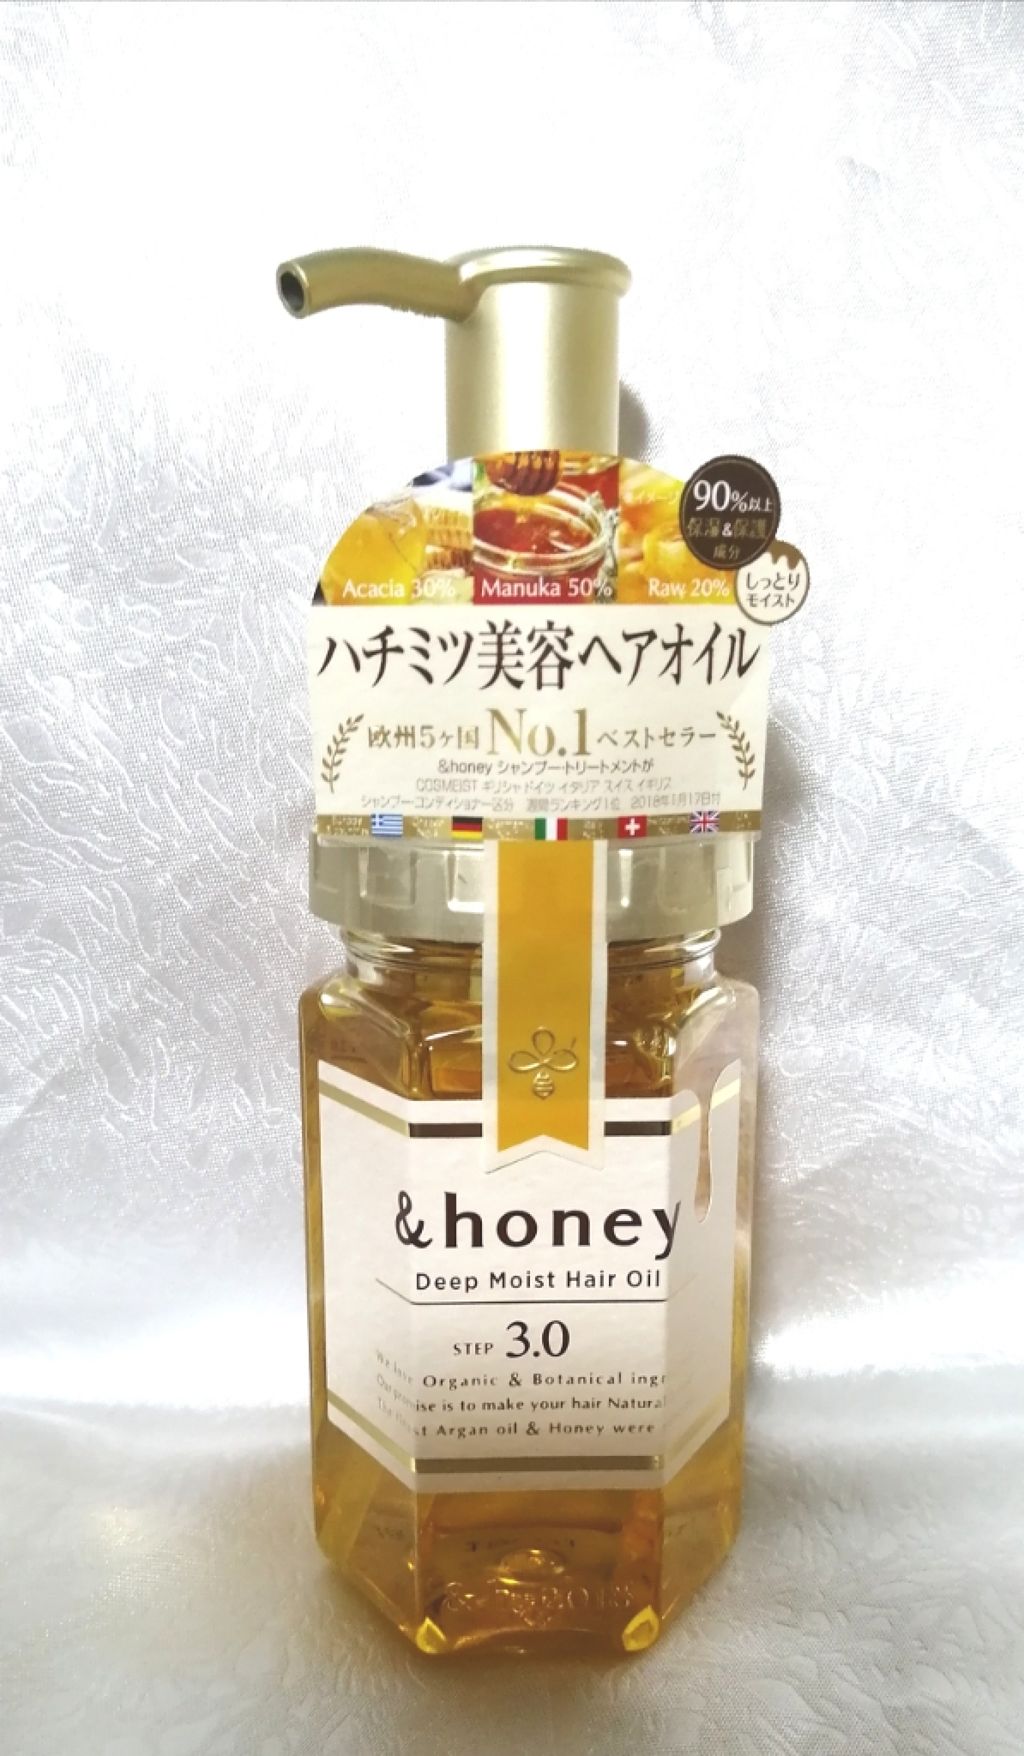 ディープモイスト ヘアオイル3 0 Honeyの口コミ アンドハニーのディープモイストシャンプーと By Orange Sounds Fi4 Lips